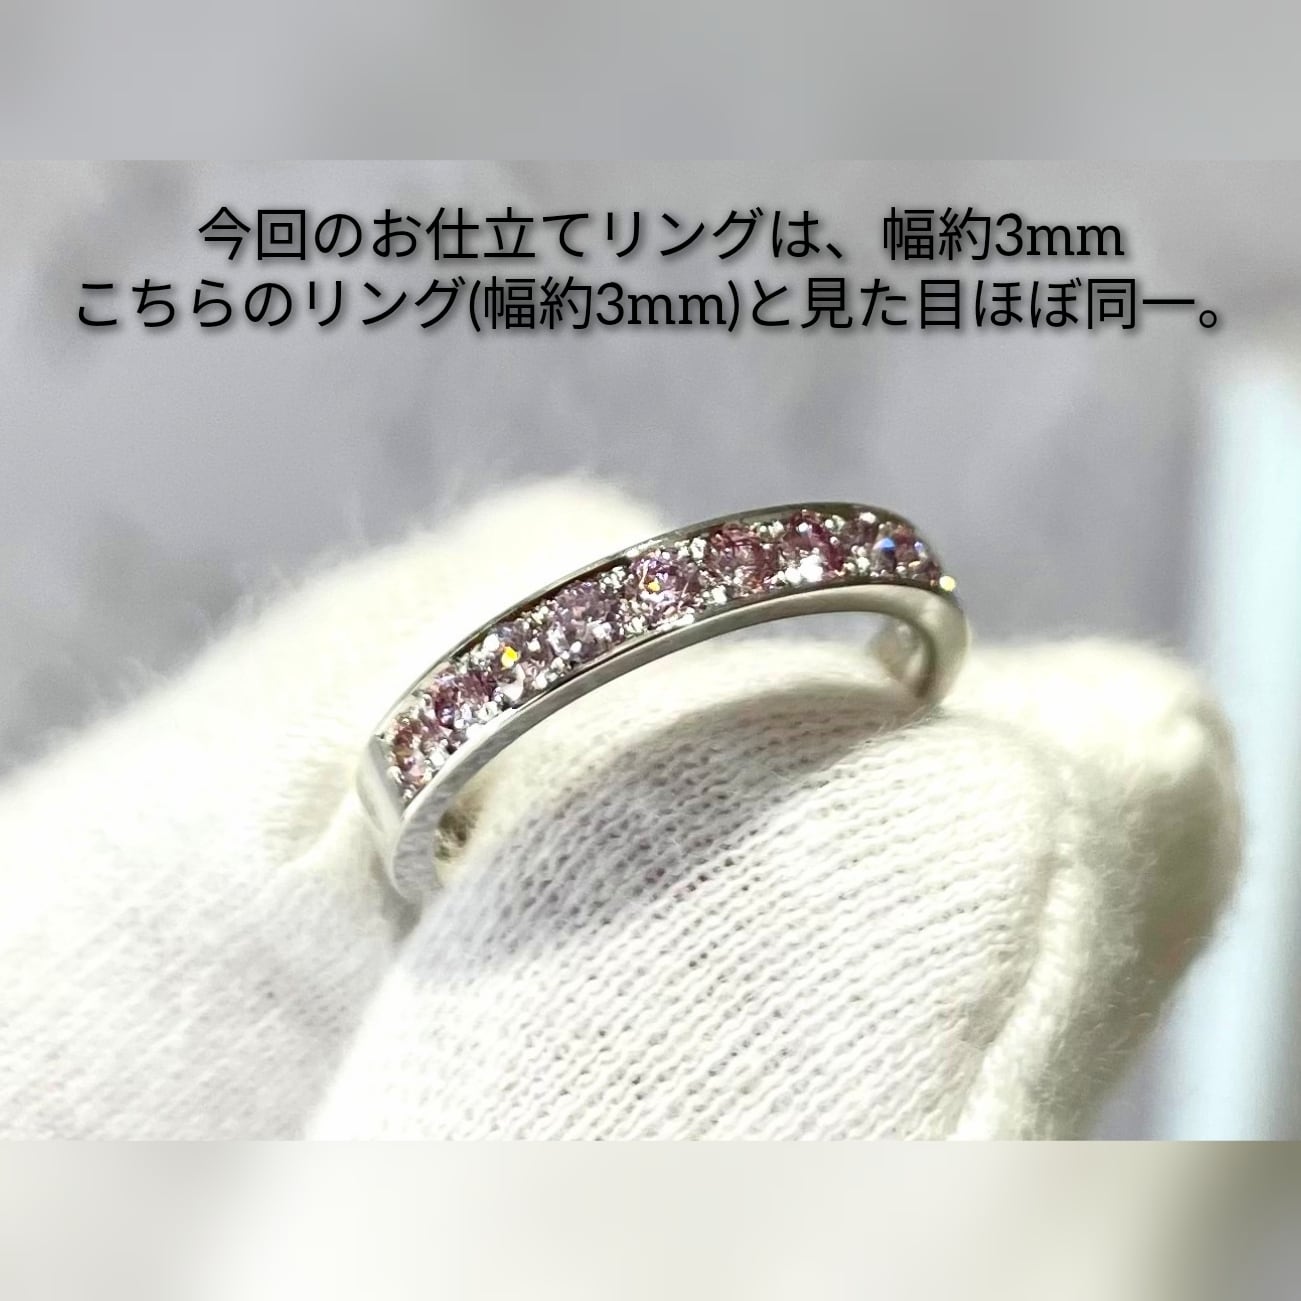 ☆セール☆ ピンクダイヤリング ☆ k18wg ホワイト ダイヤリング